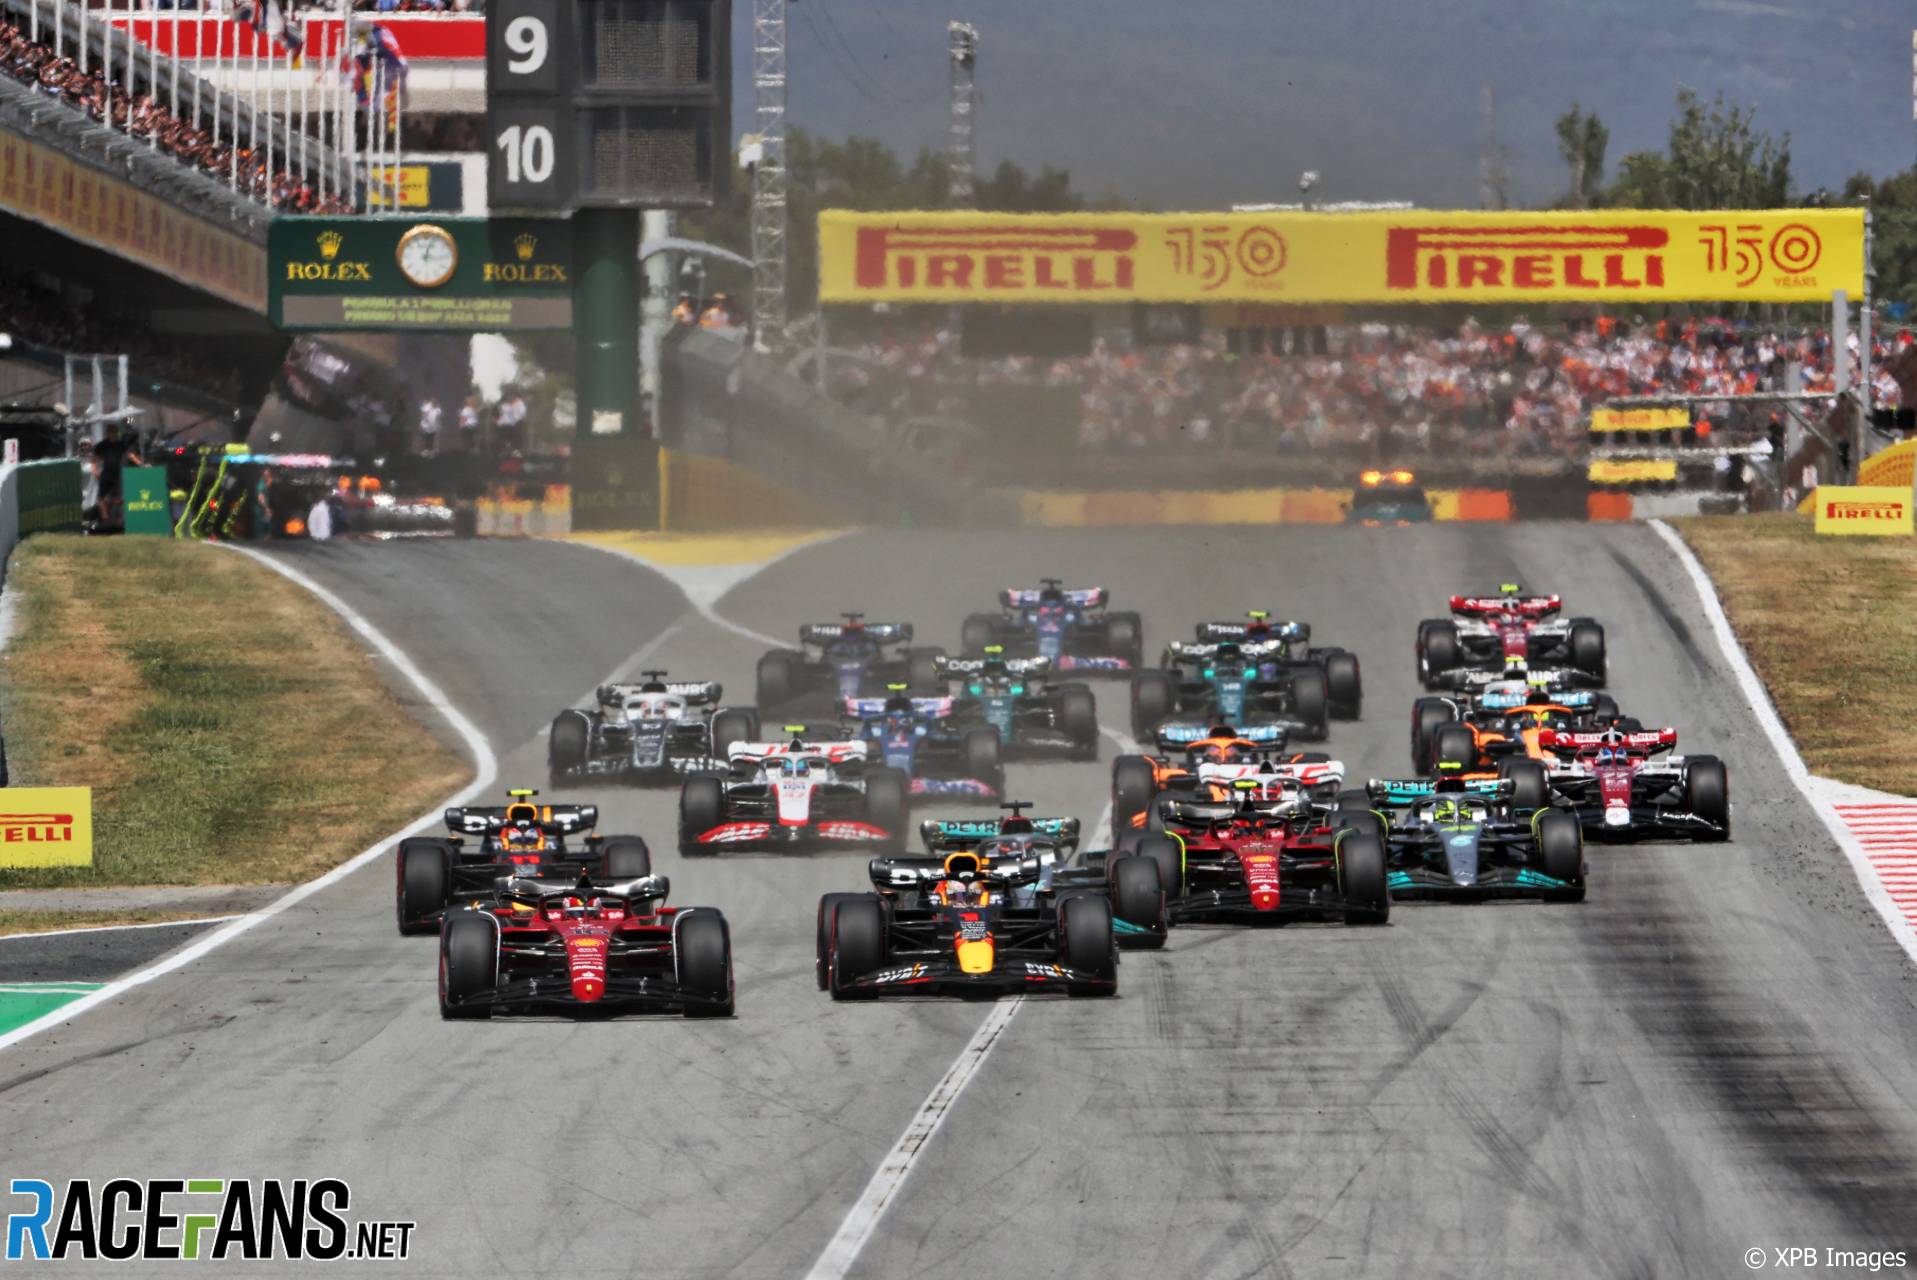 Race start, Circuit de Barcelona-Catalunya, 2022